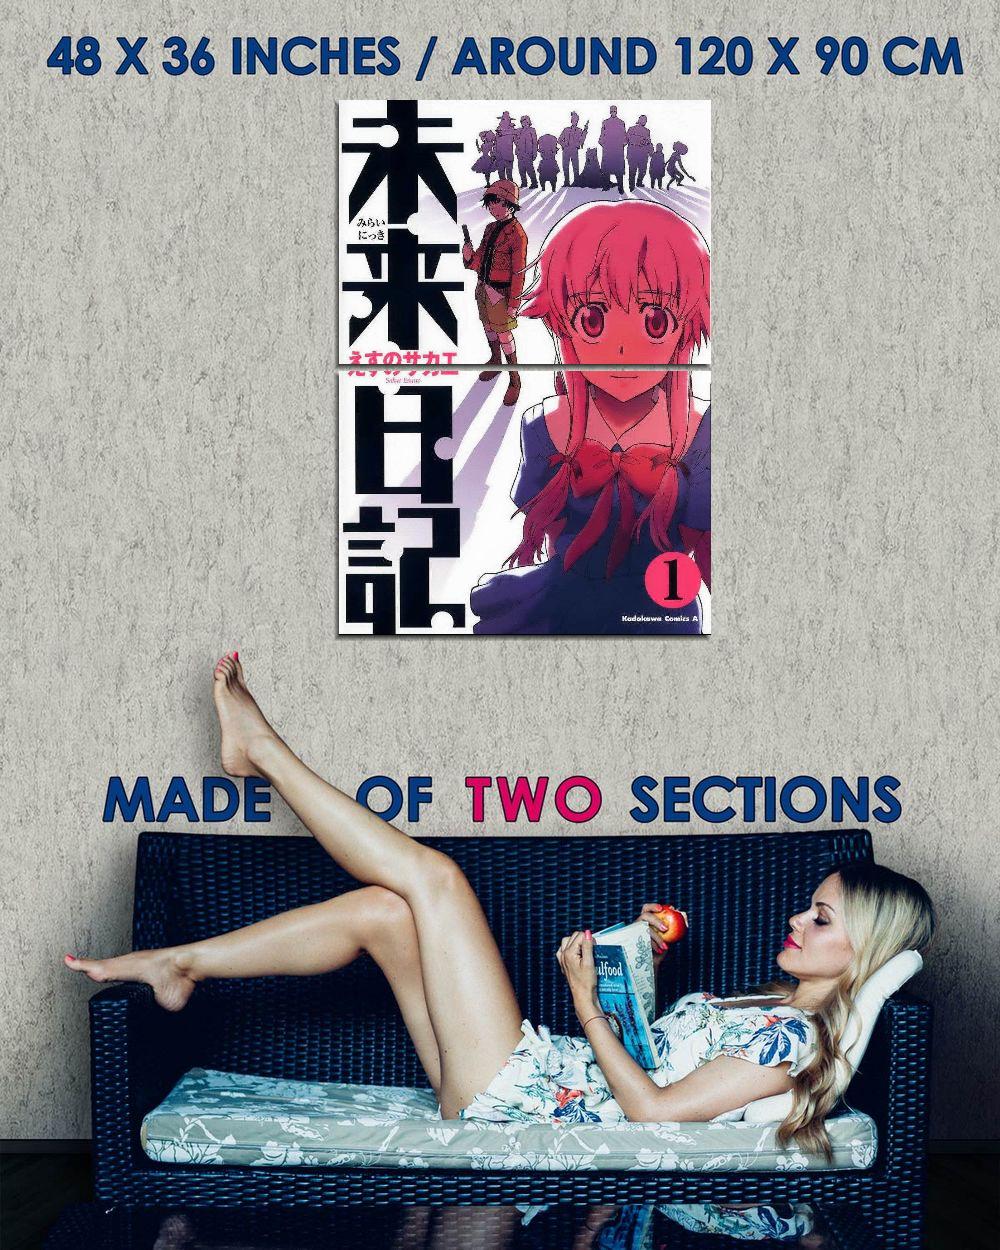 19610 Mirai Nikki Redial Anime Decor Wall Print Poster